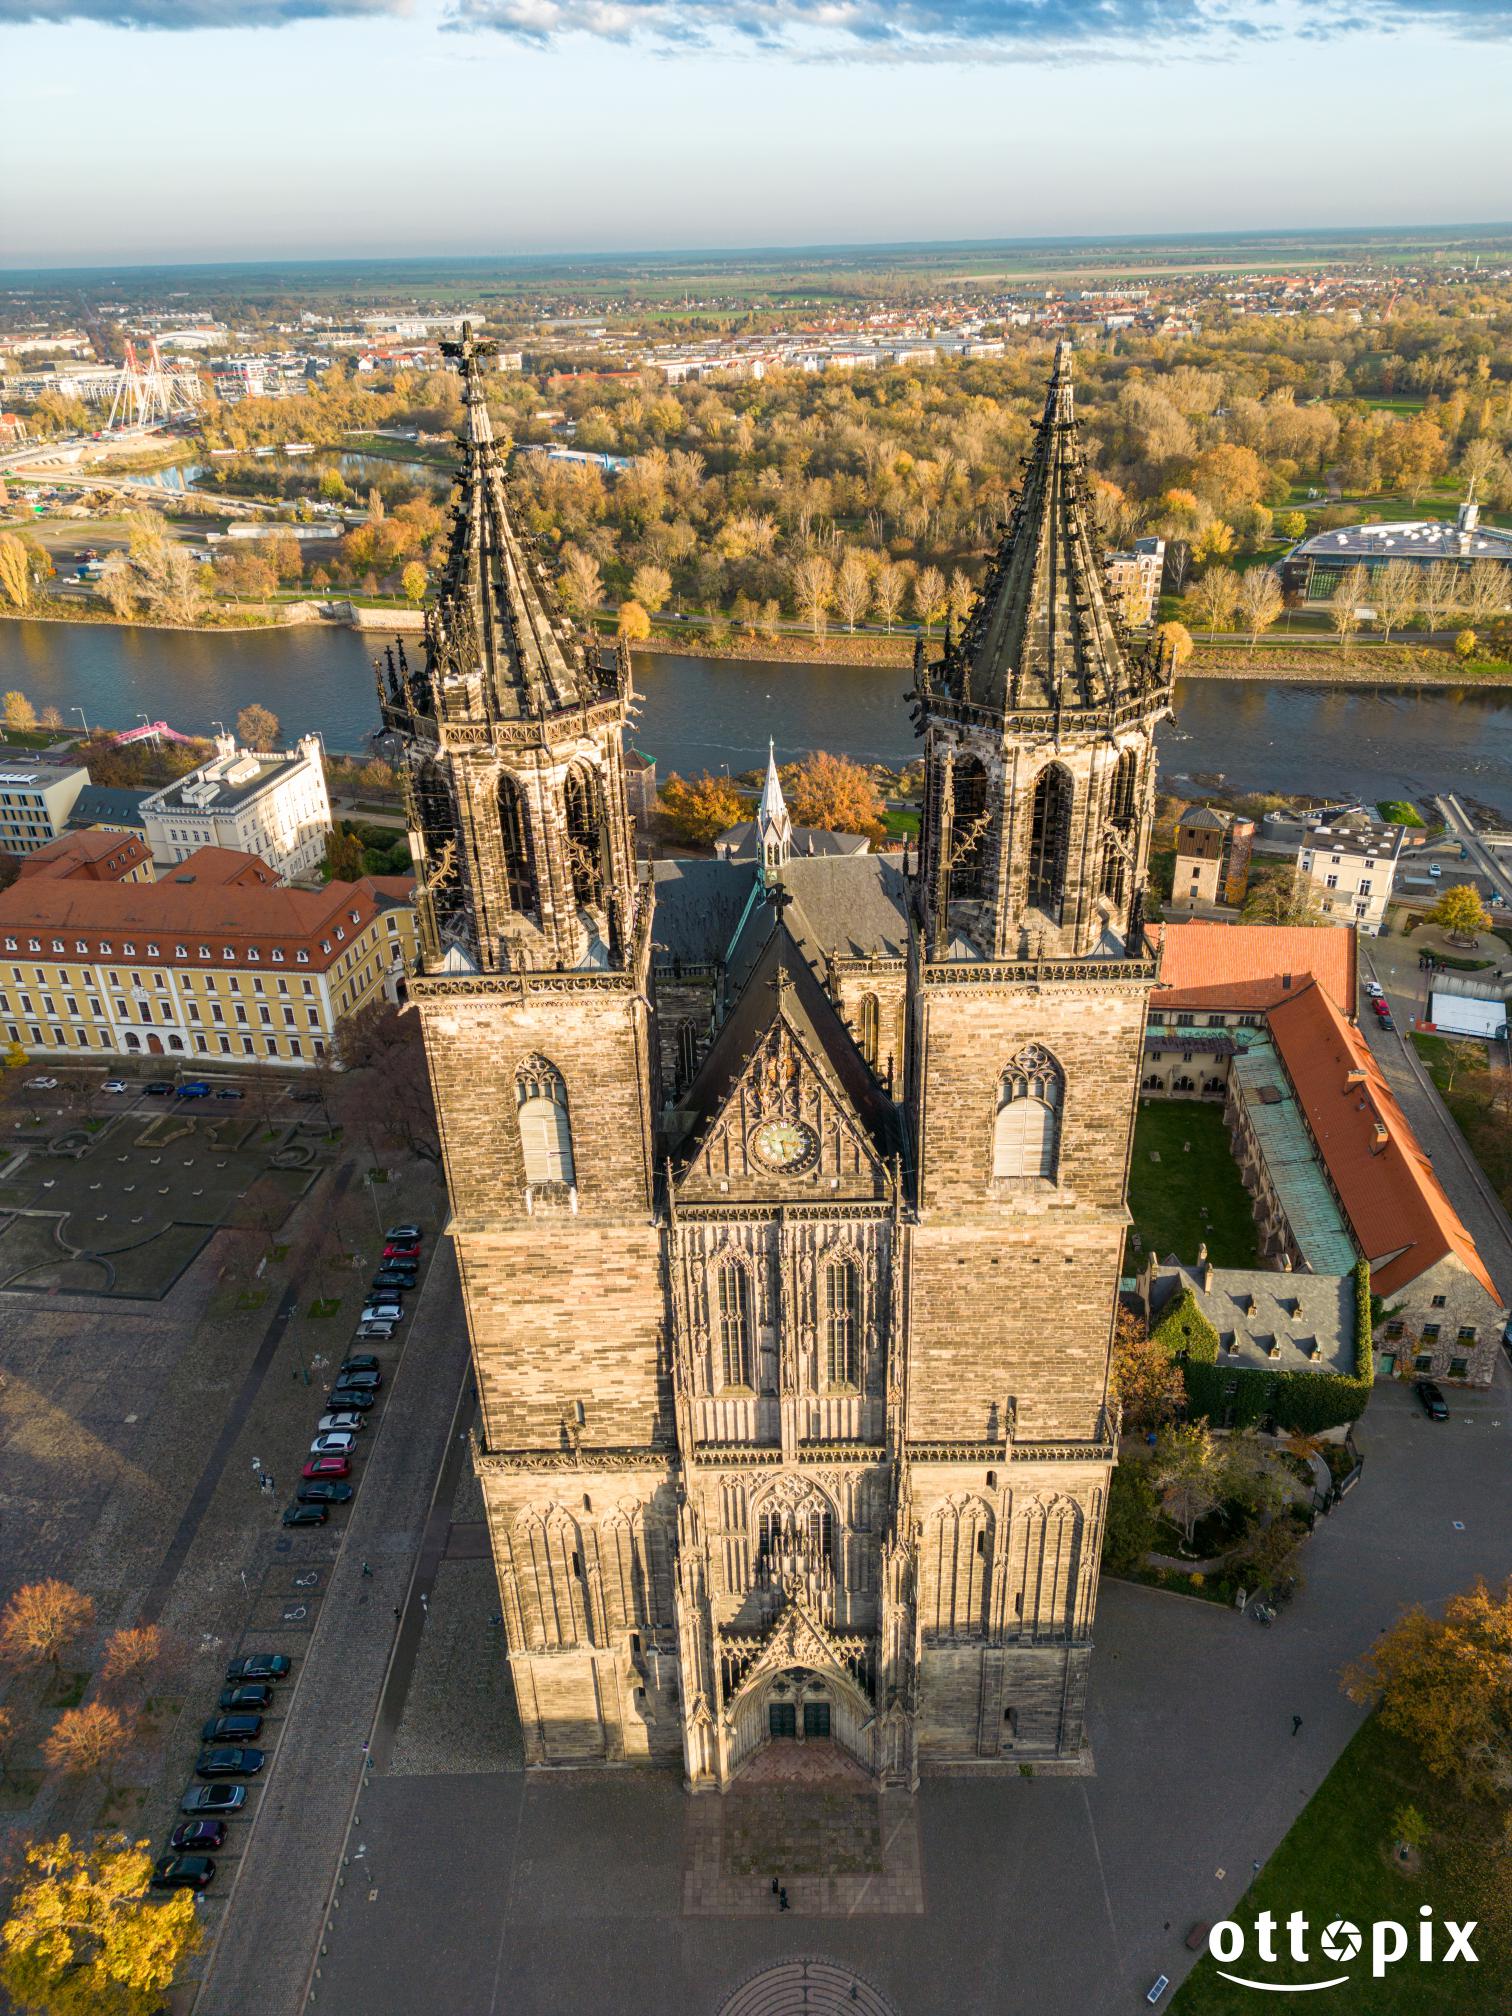 Dom zu Magdeburg Westfassade aus der Luft